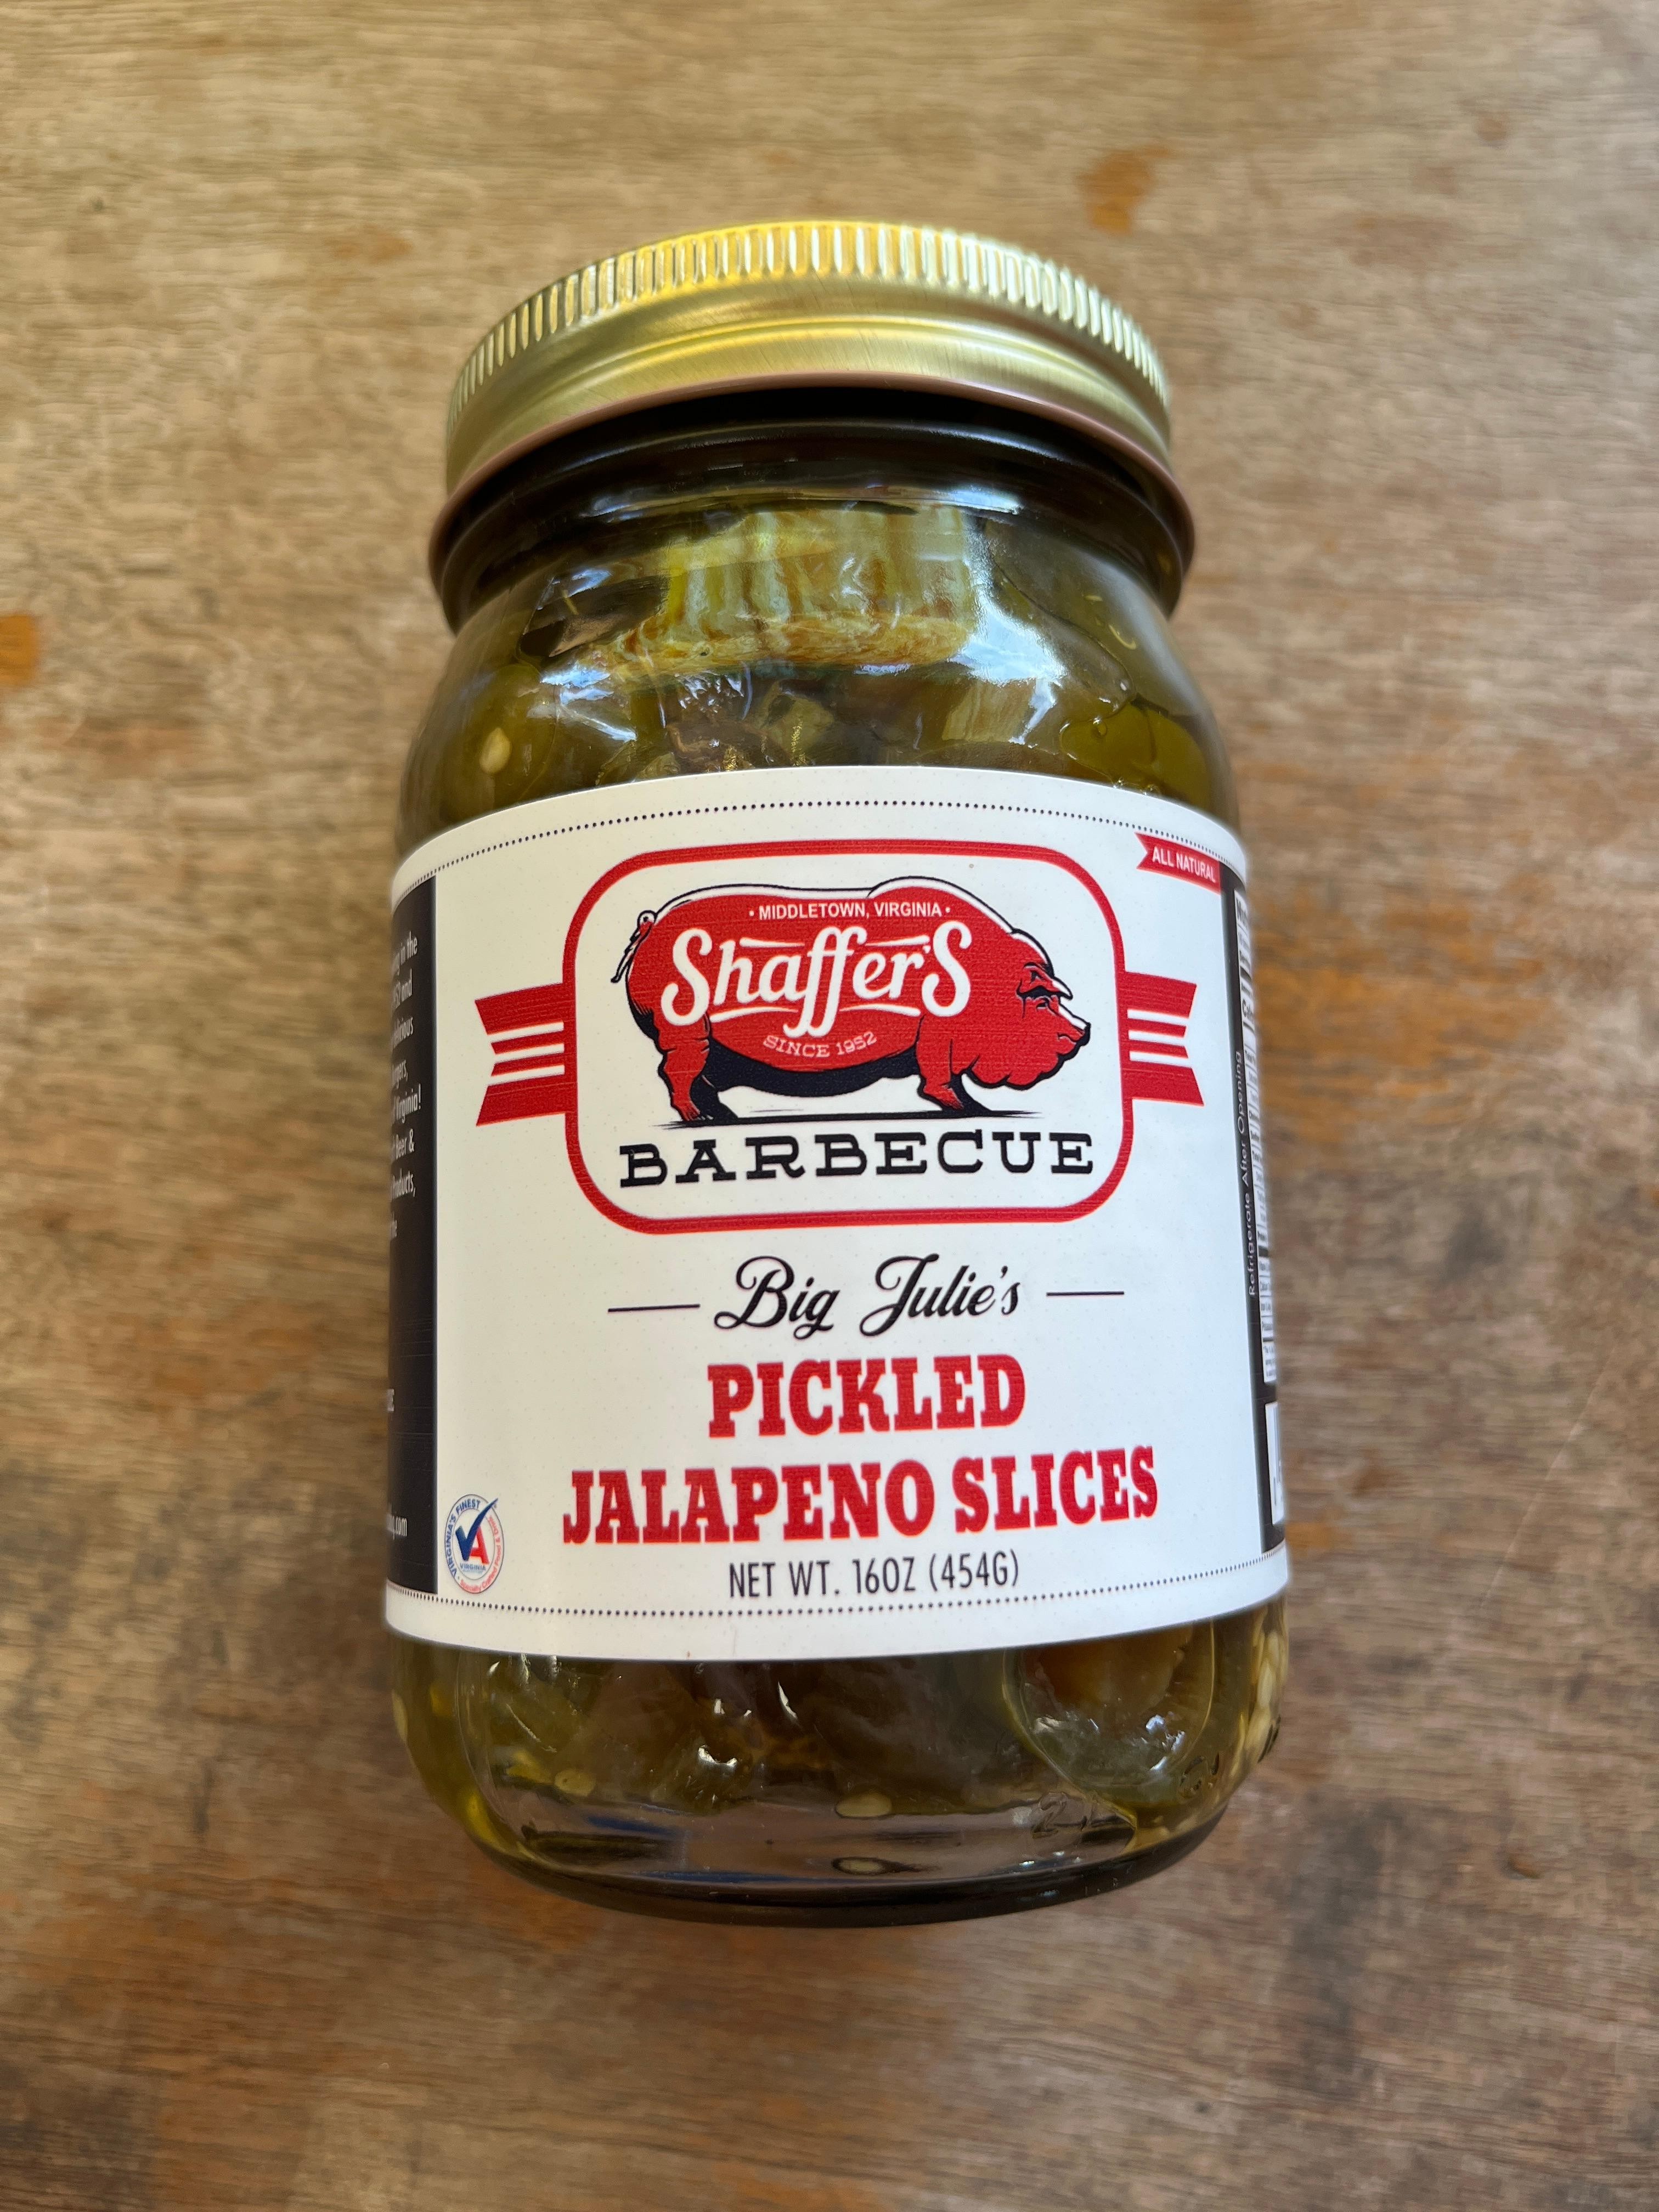 Big Julie’s Pickled Jalapeño Slices